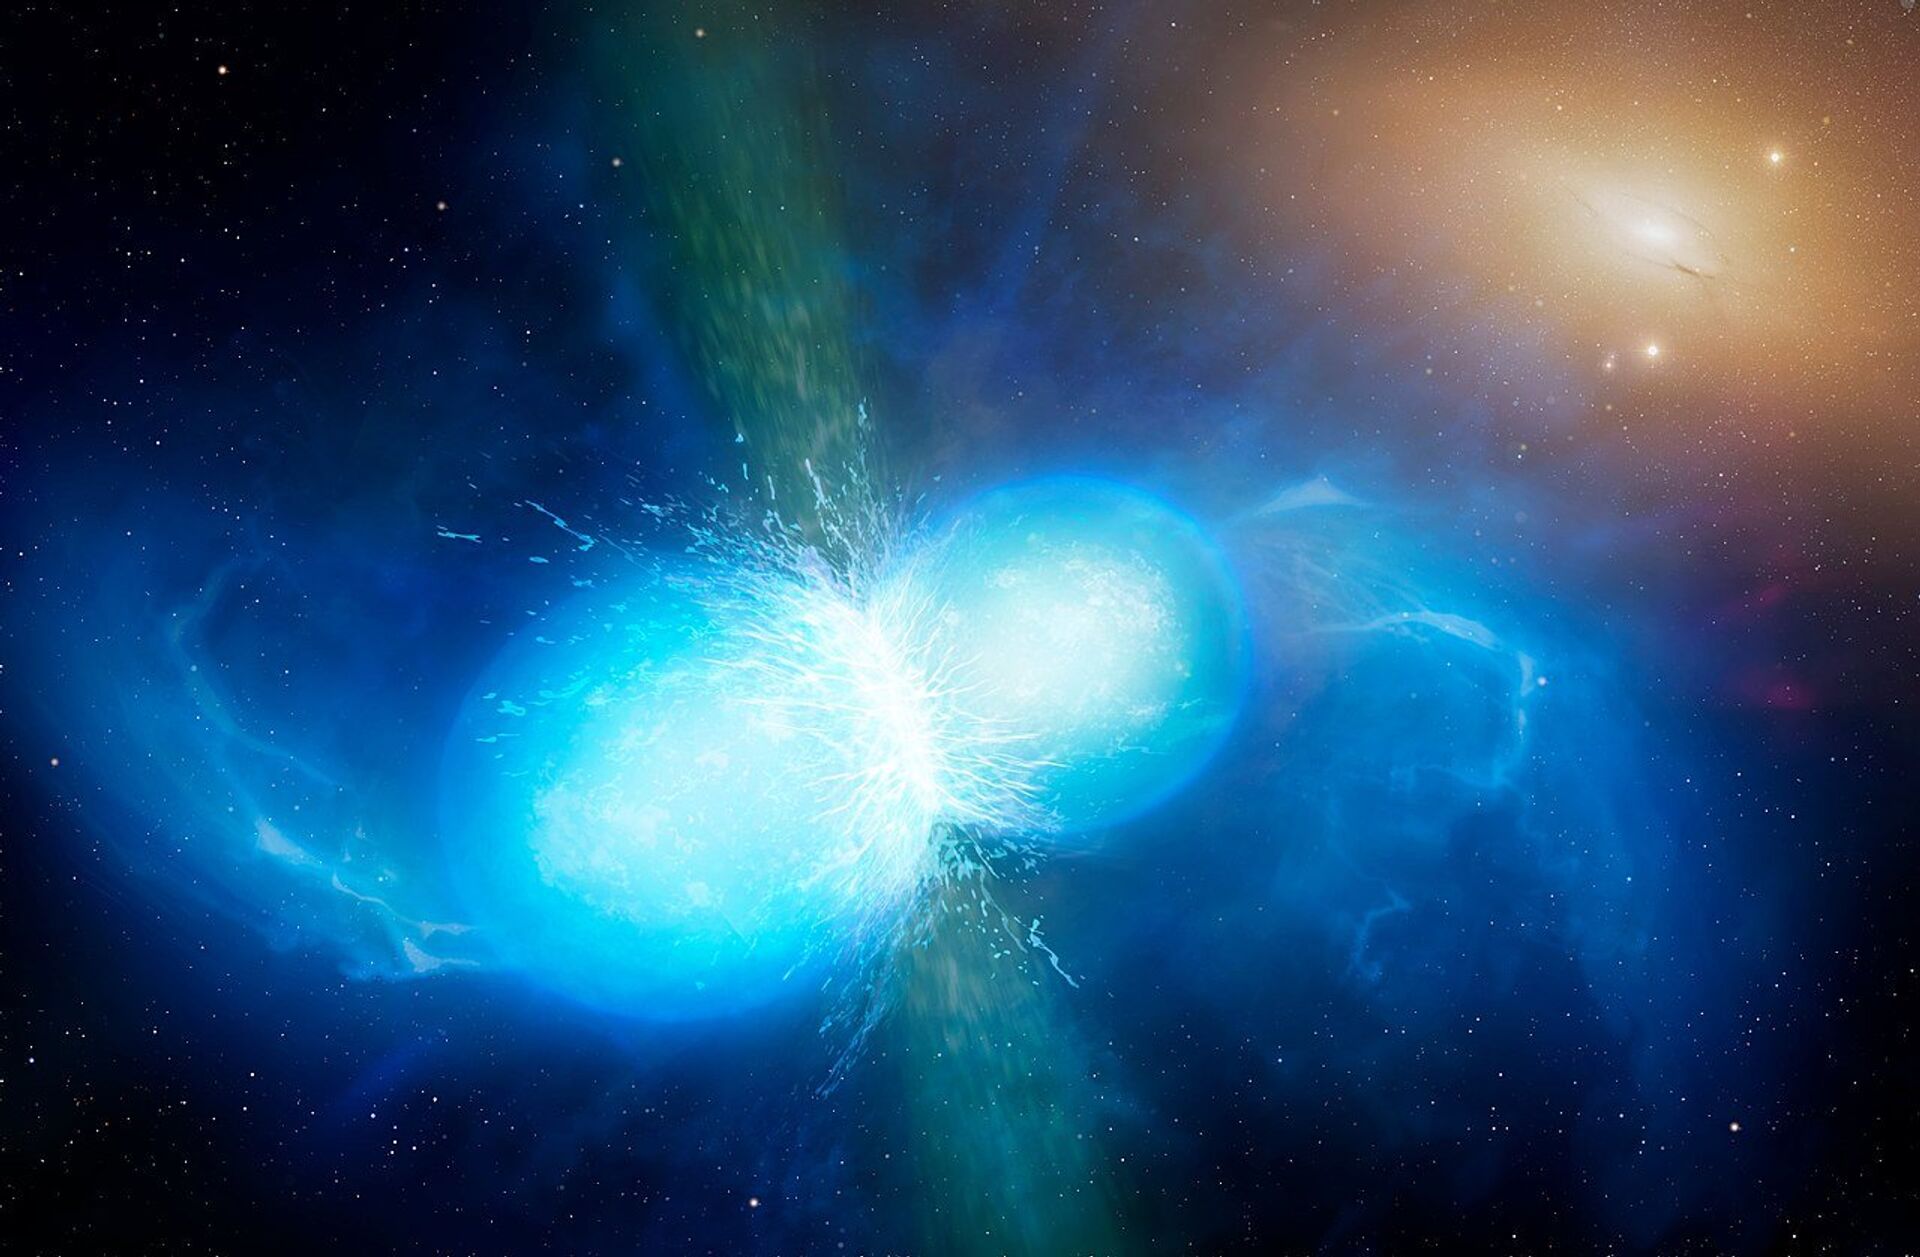 Físicos estimam que estrelas de nêutrons surgidas de supernovas podem ser muito maiores que o Sol - Sputnik Brasil, 1920, 14.05.2021